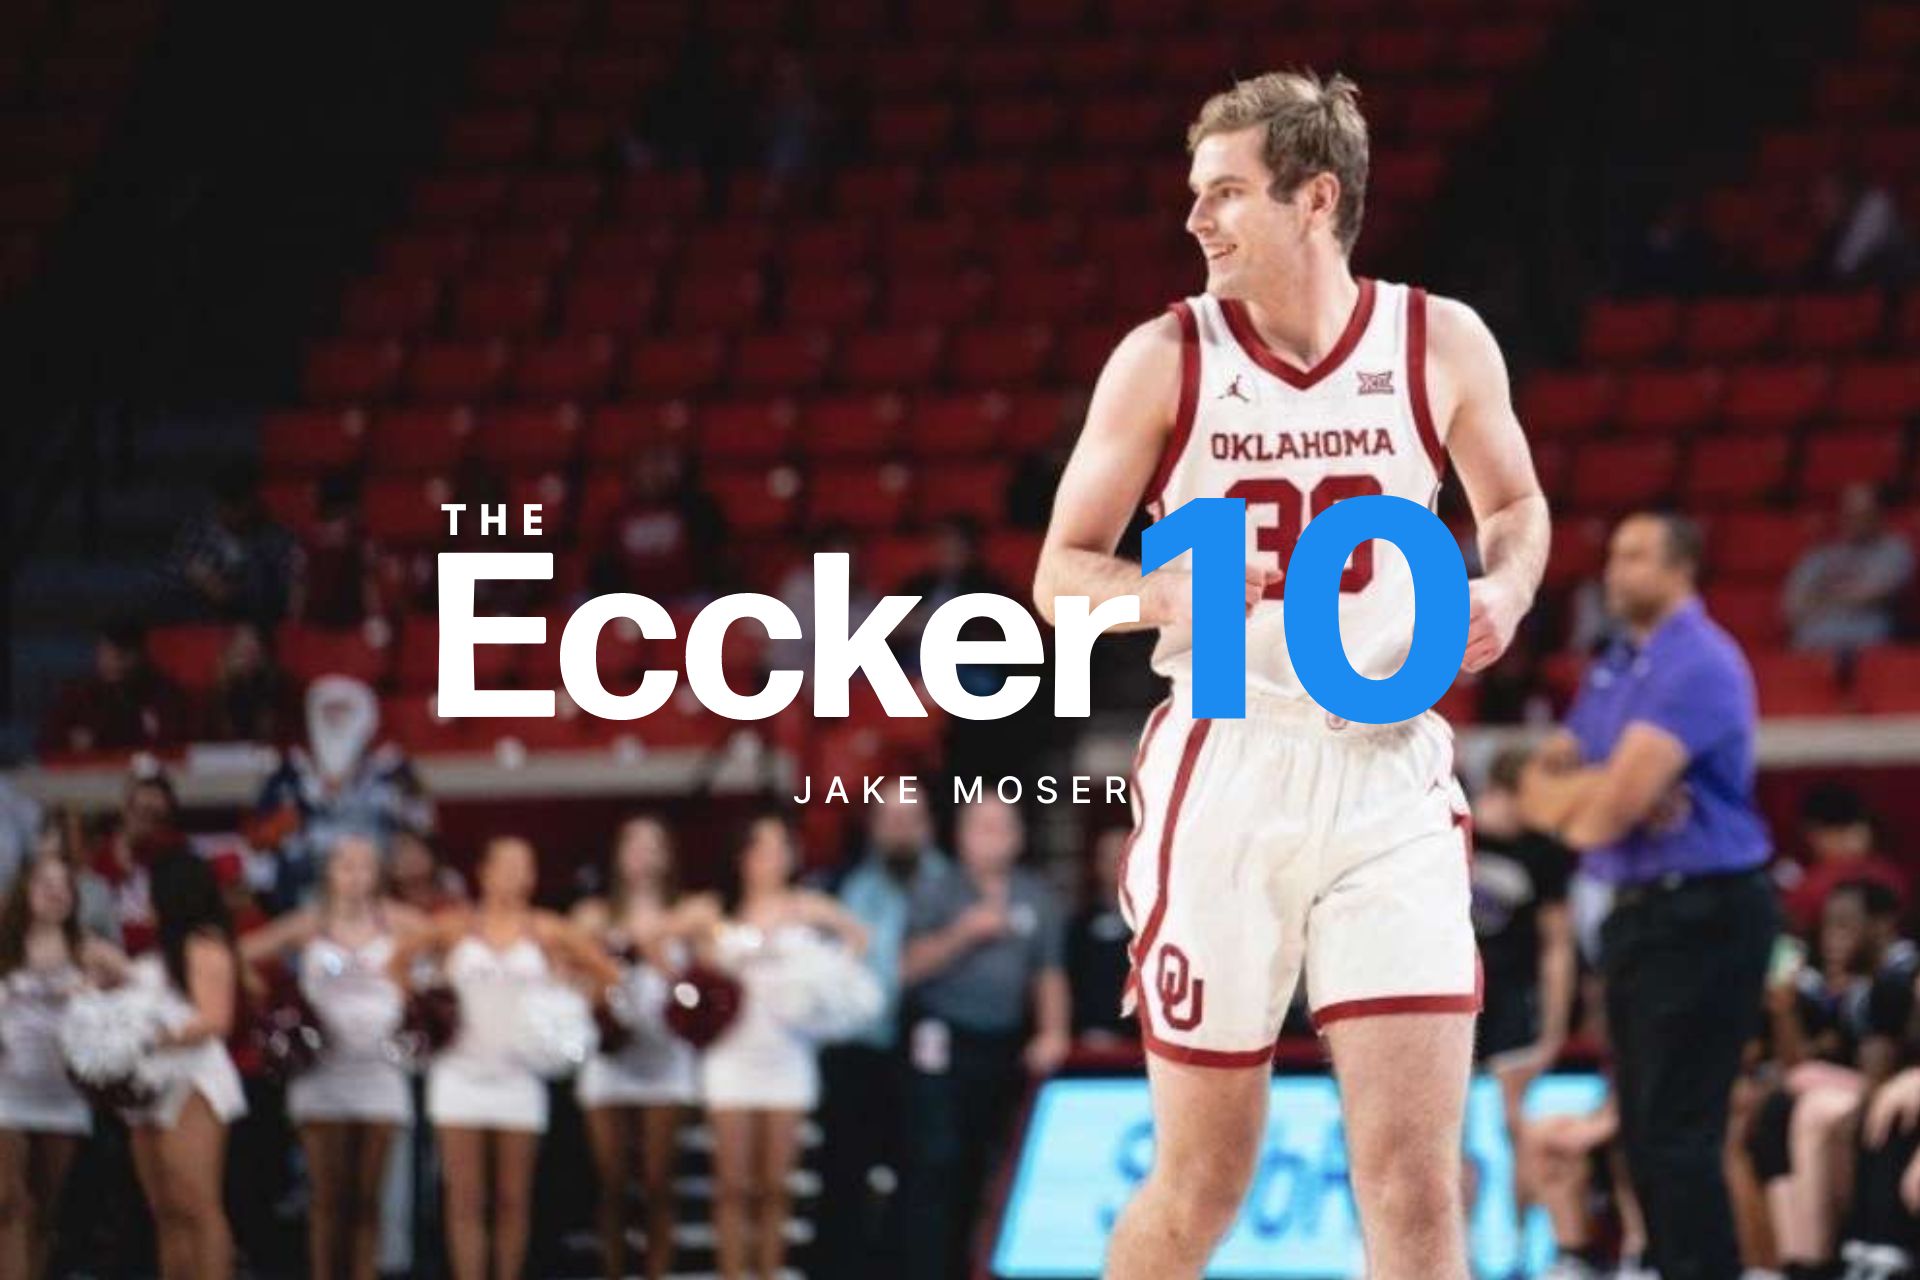 The Eccker 10 - Jake Moser